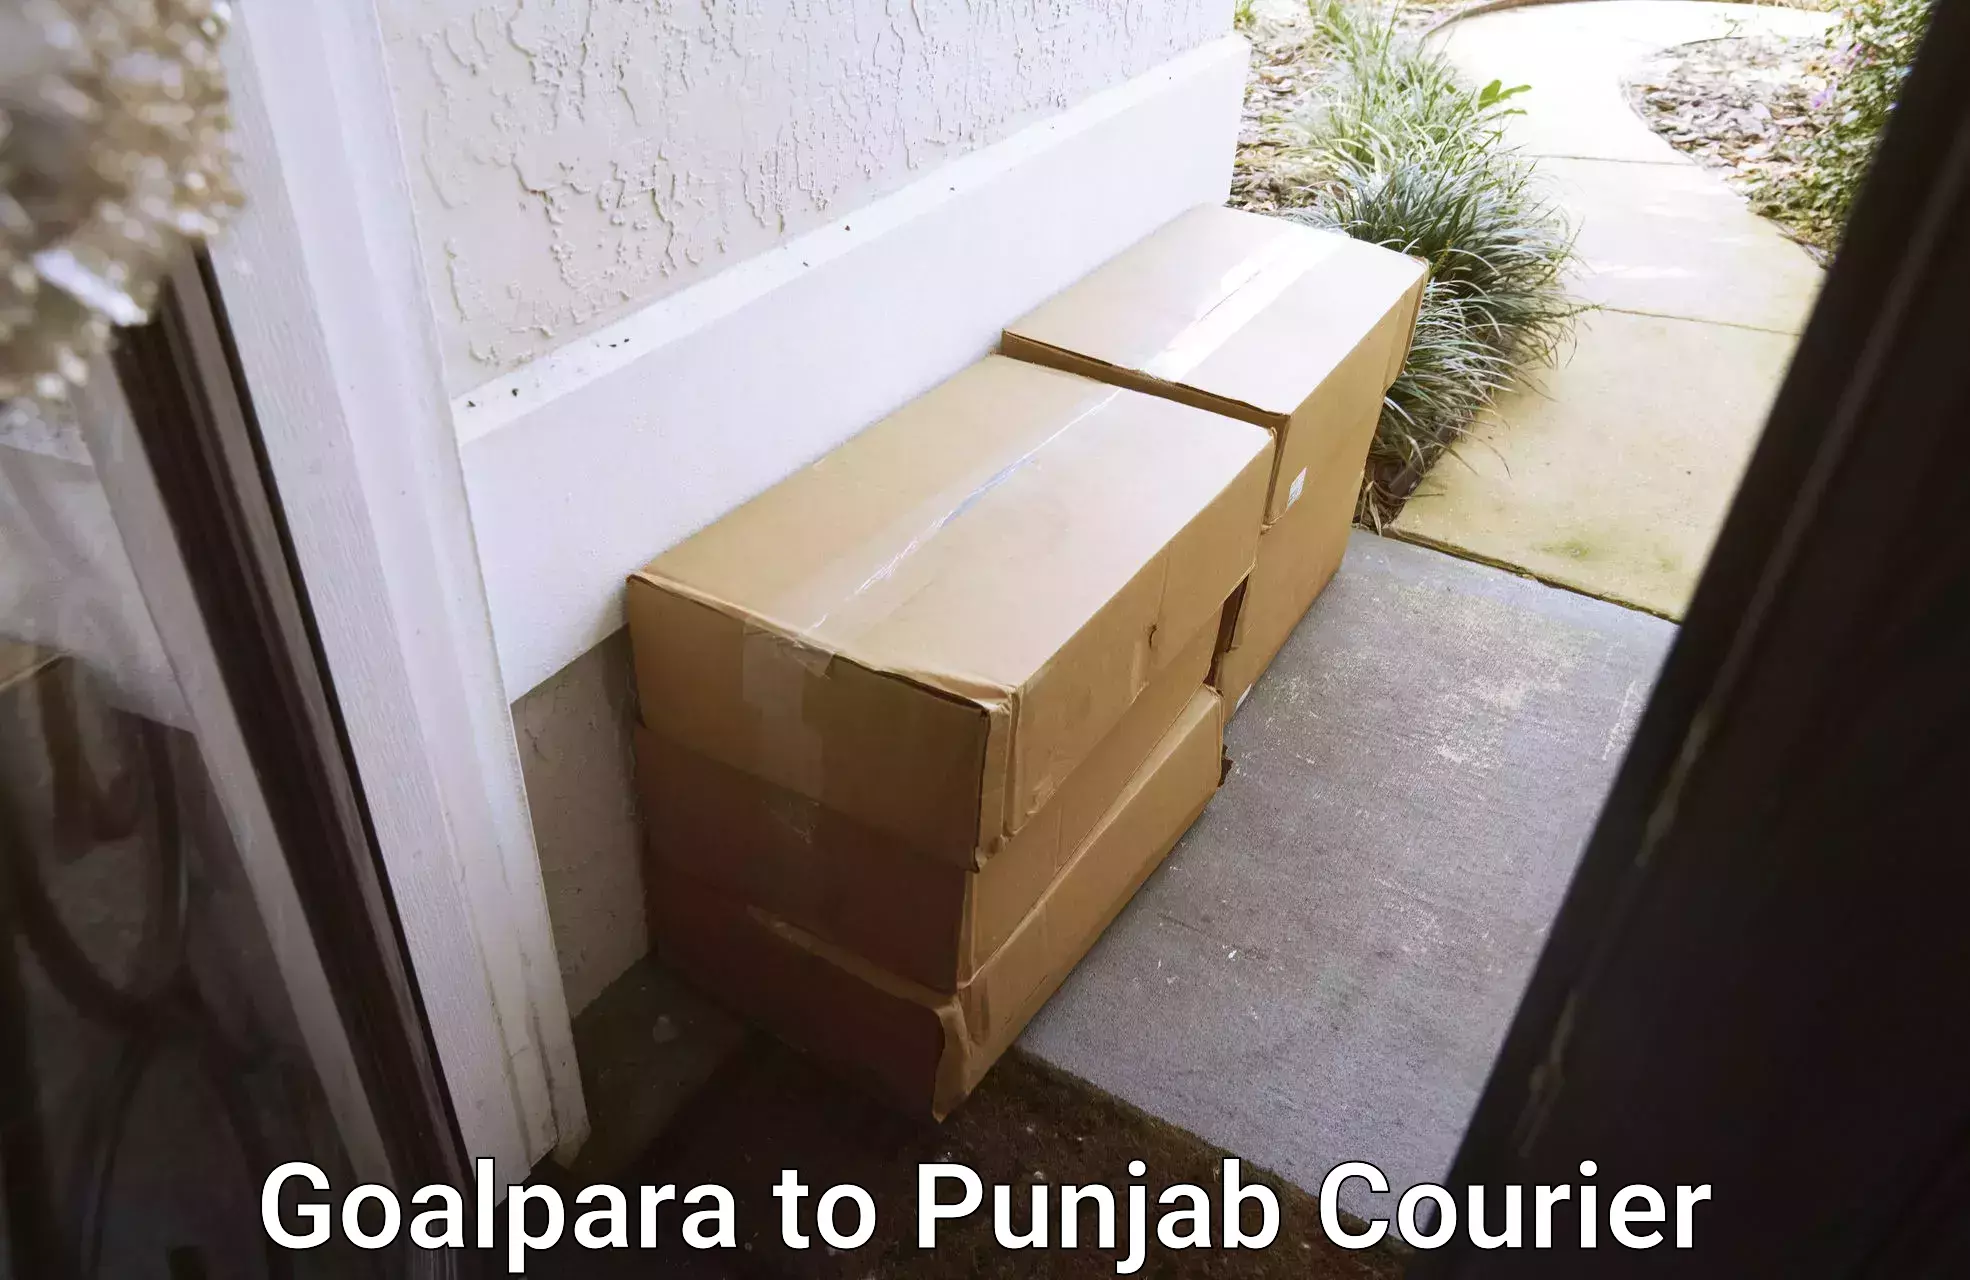 24-hour courier services Goalpara to Jalandhar